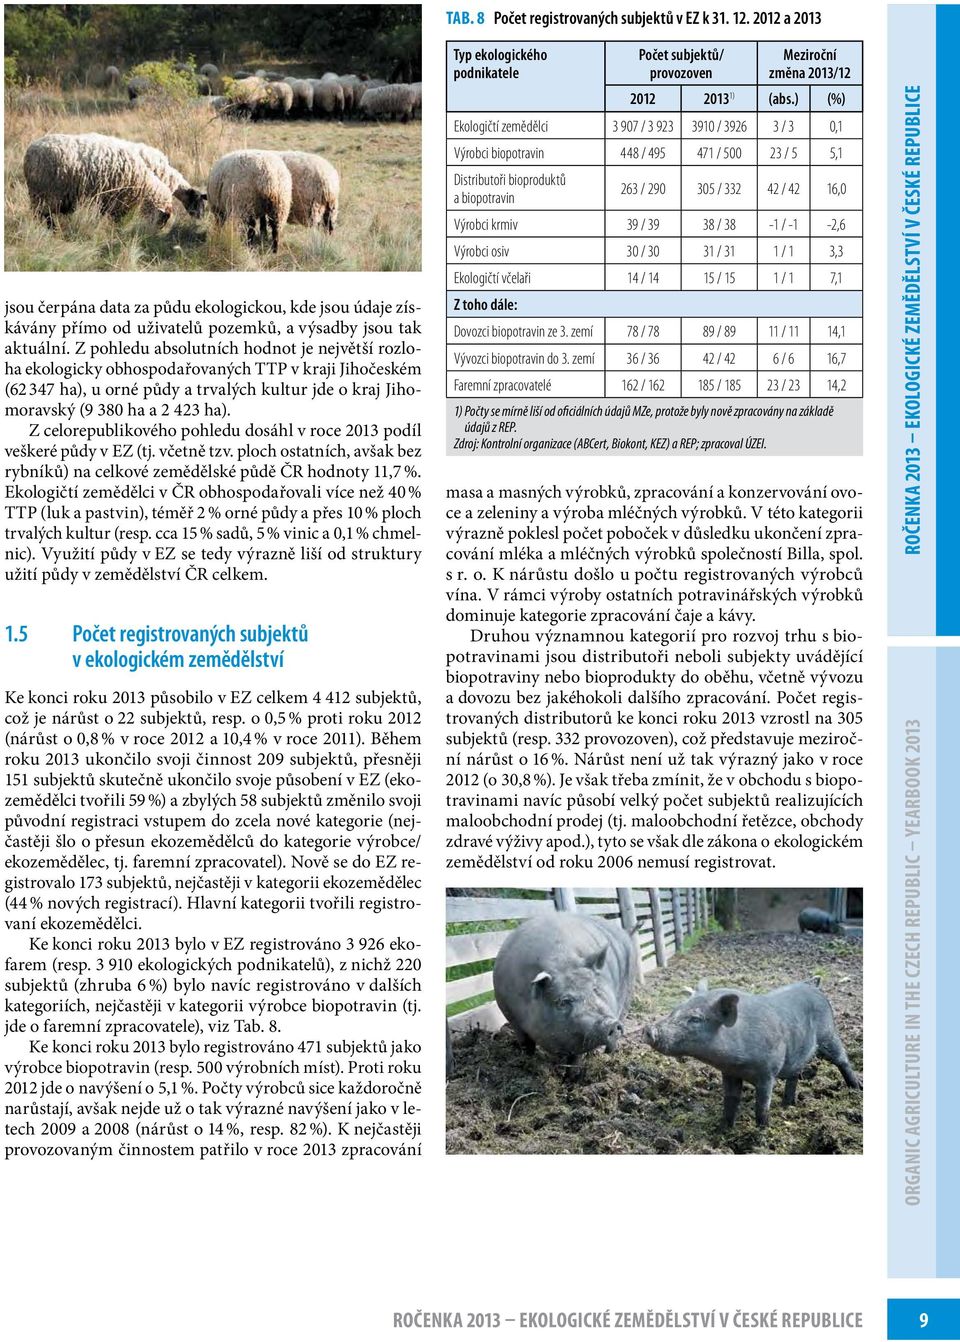 Z celorepublikového pohledu dosáhl v roce 2013 podíl veškeré půdy v EZ (tj. včetně tzv. ploch ostatních, avšak bez rybníků) na celkové zemědělské půdě ČR hodnoty 11,7 %.